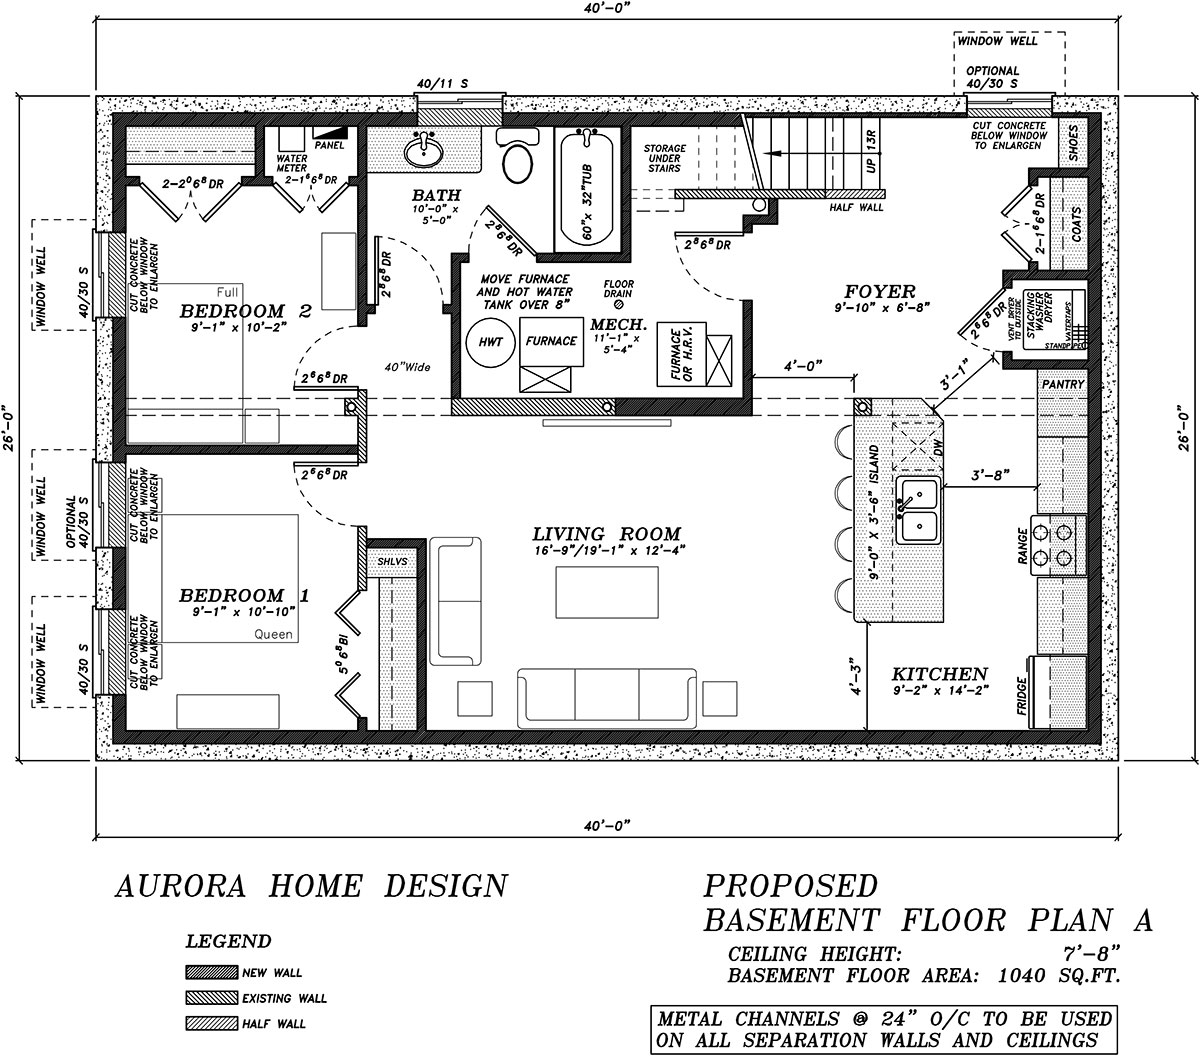 Basement Suite Development Proposed